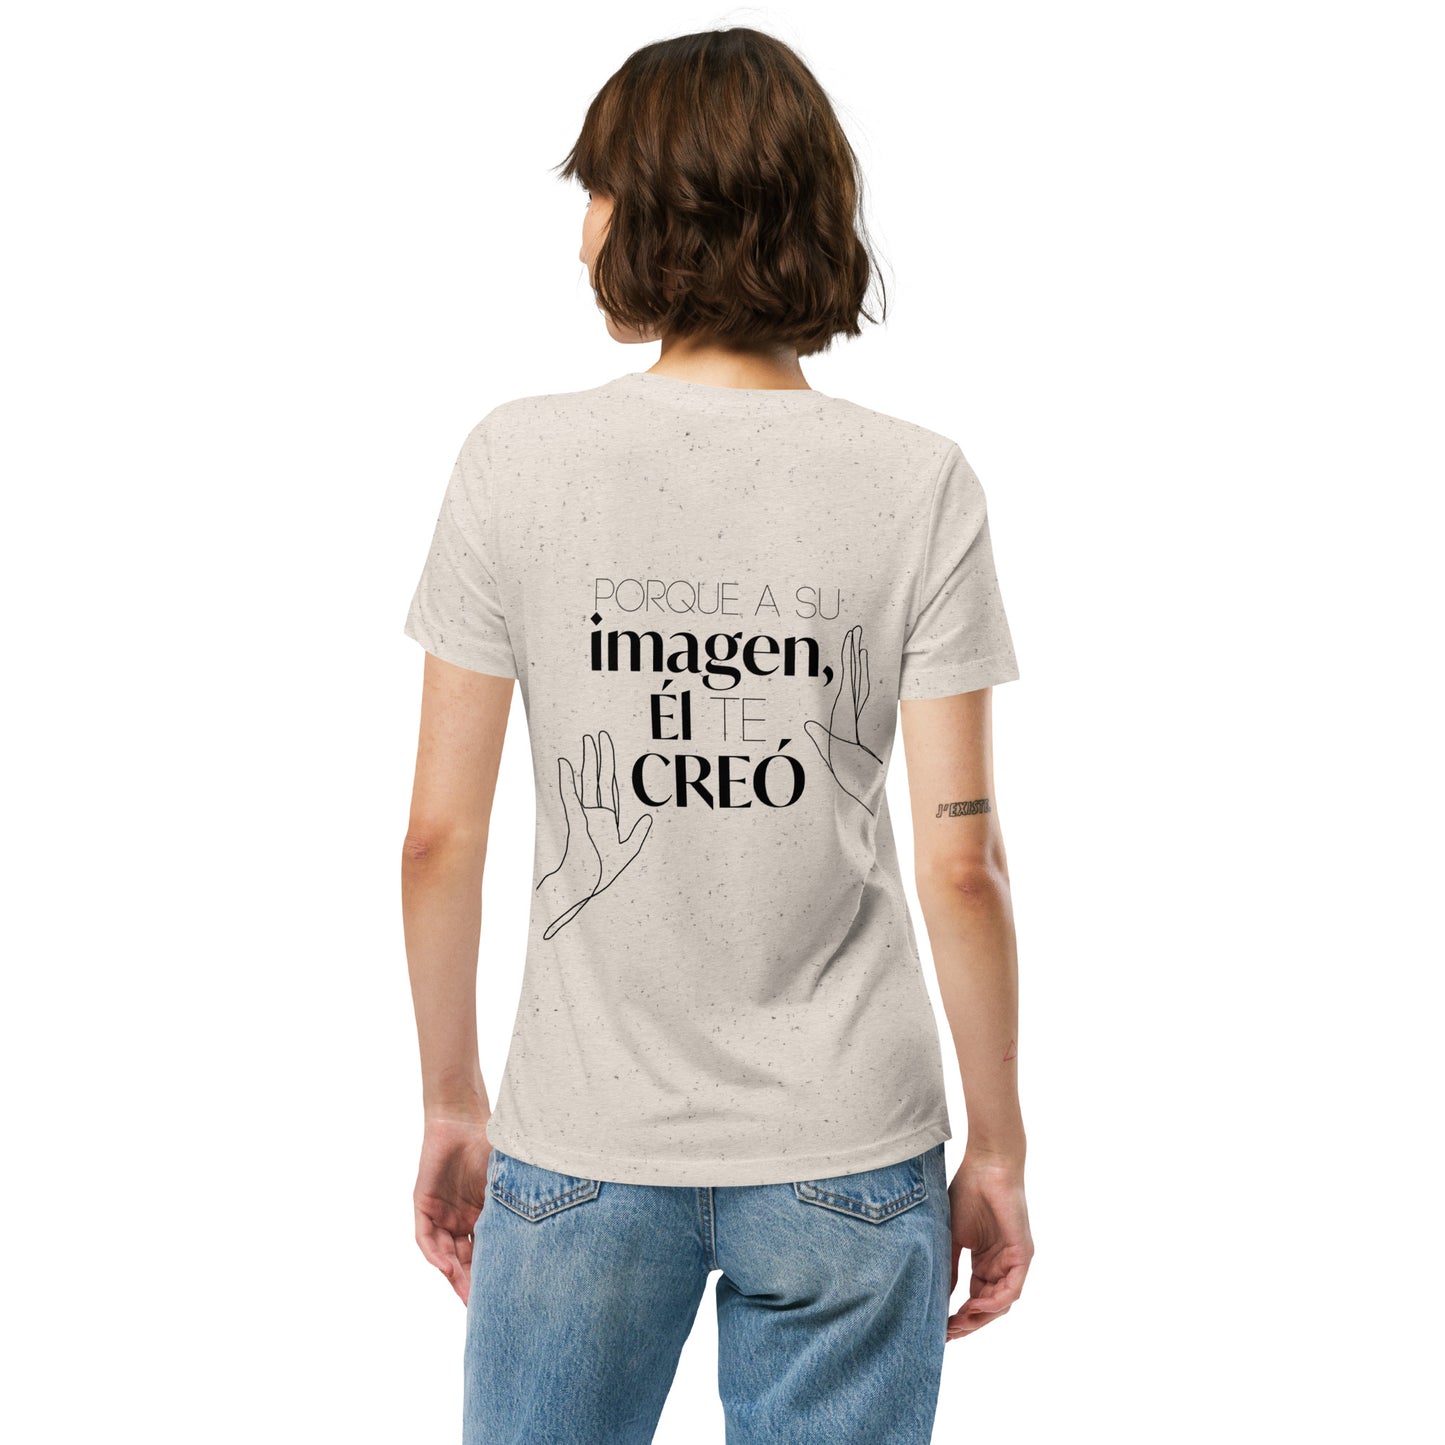 Camiseta mujer "El te creo a su imágen"